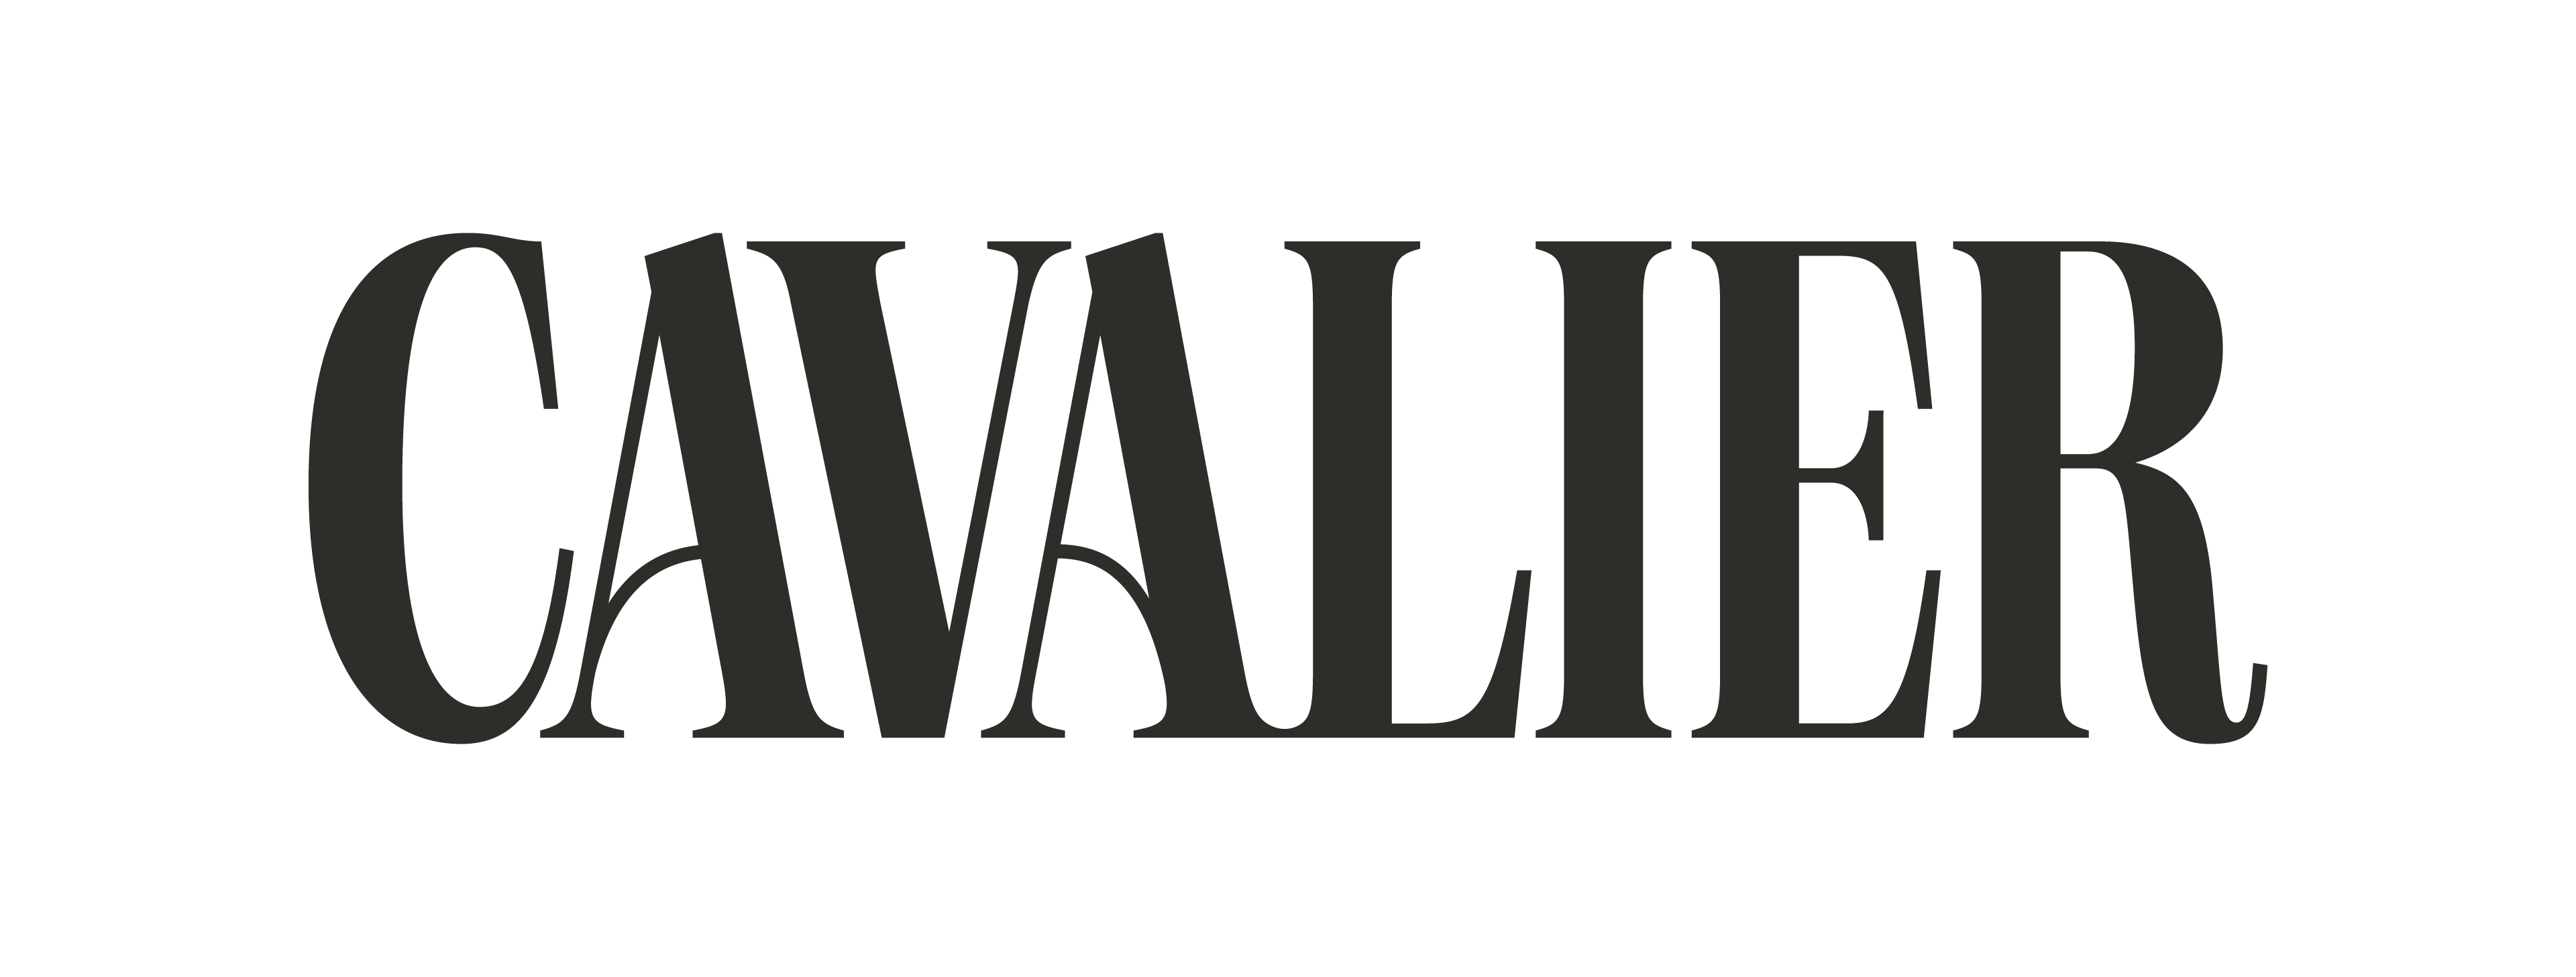 Gift of Time Cavalier Sponsor Logo